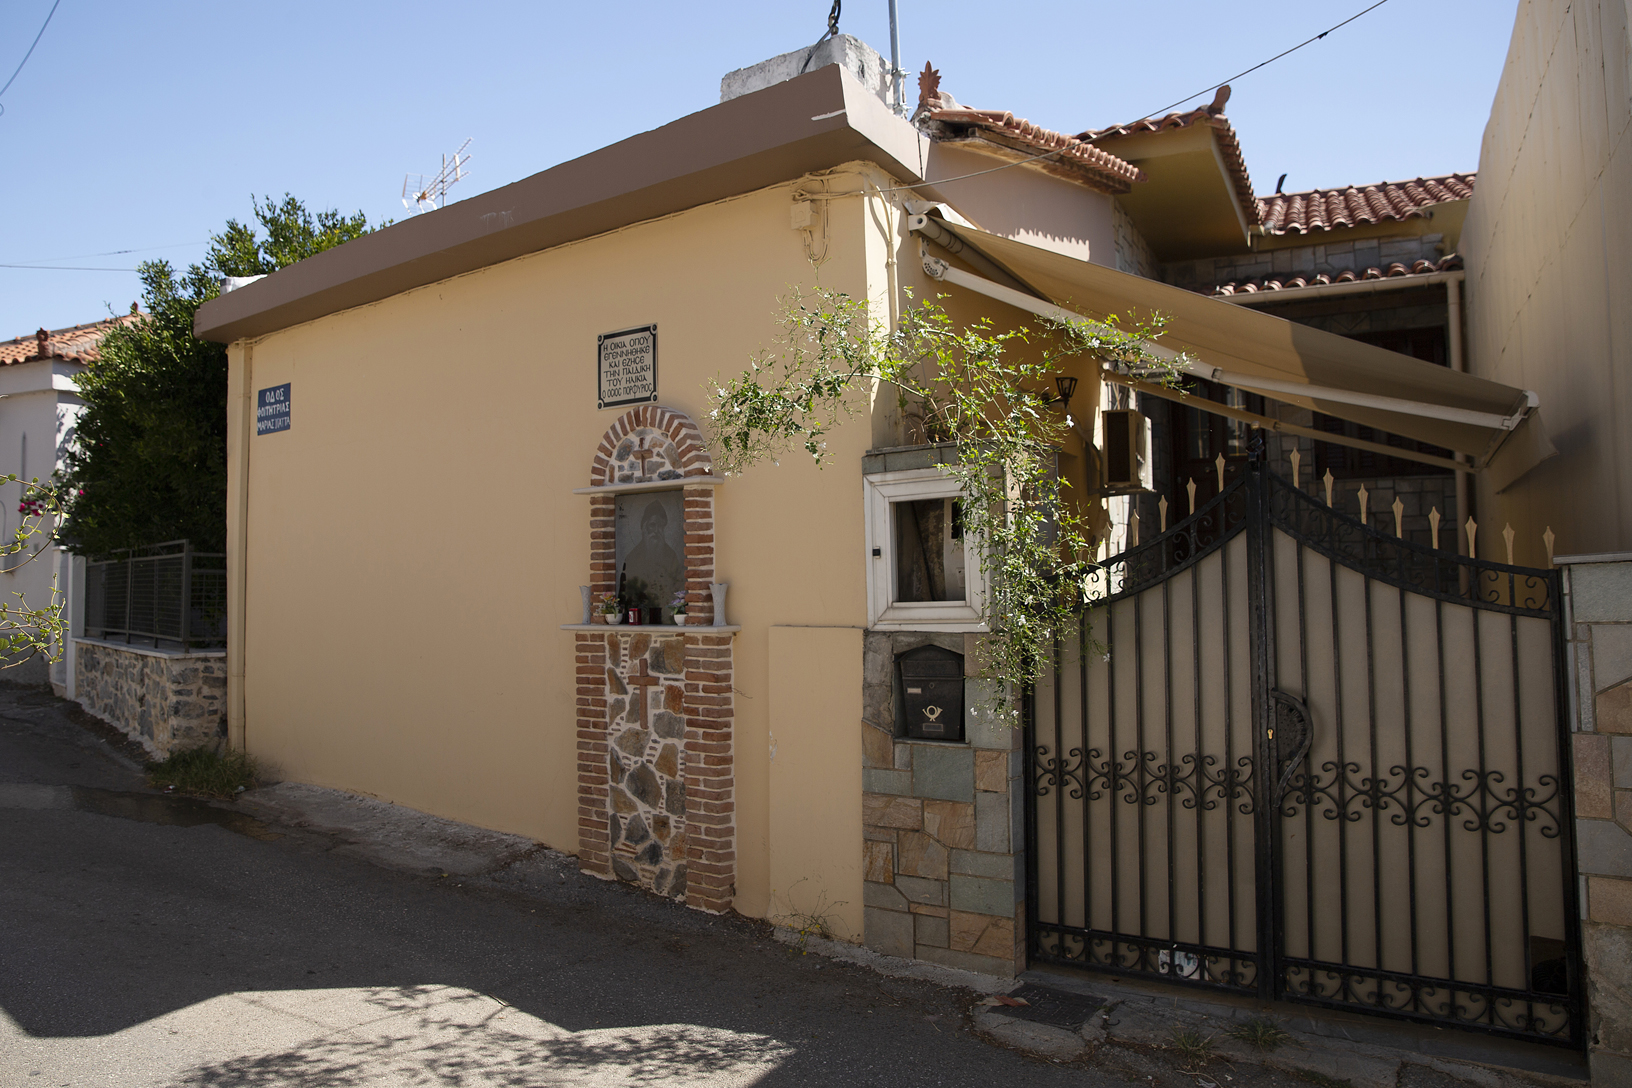 Οικία που γεννήθηκε ο Όσιος Πορφύριος, χωριό Άγιος Ιωάννης. Φωτογραφία: ©Βασίλης Συκάς, για τον Δήμο Κύμης-Αλιβερίου